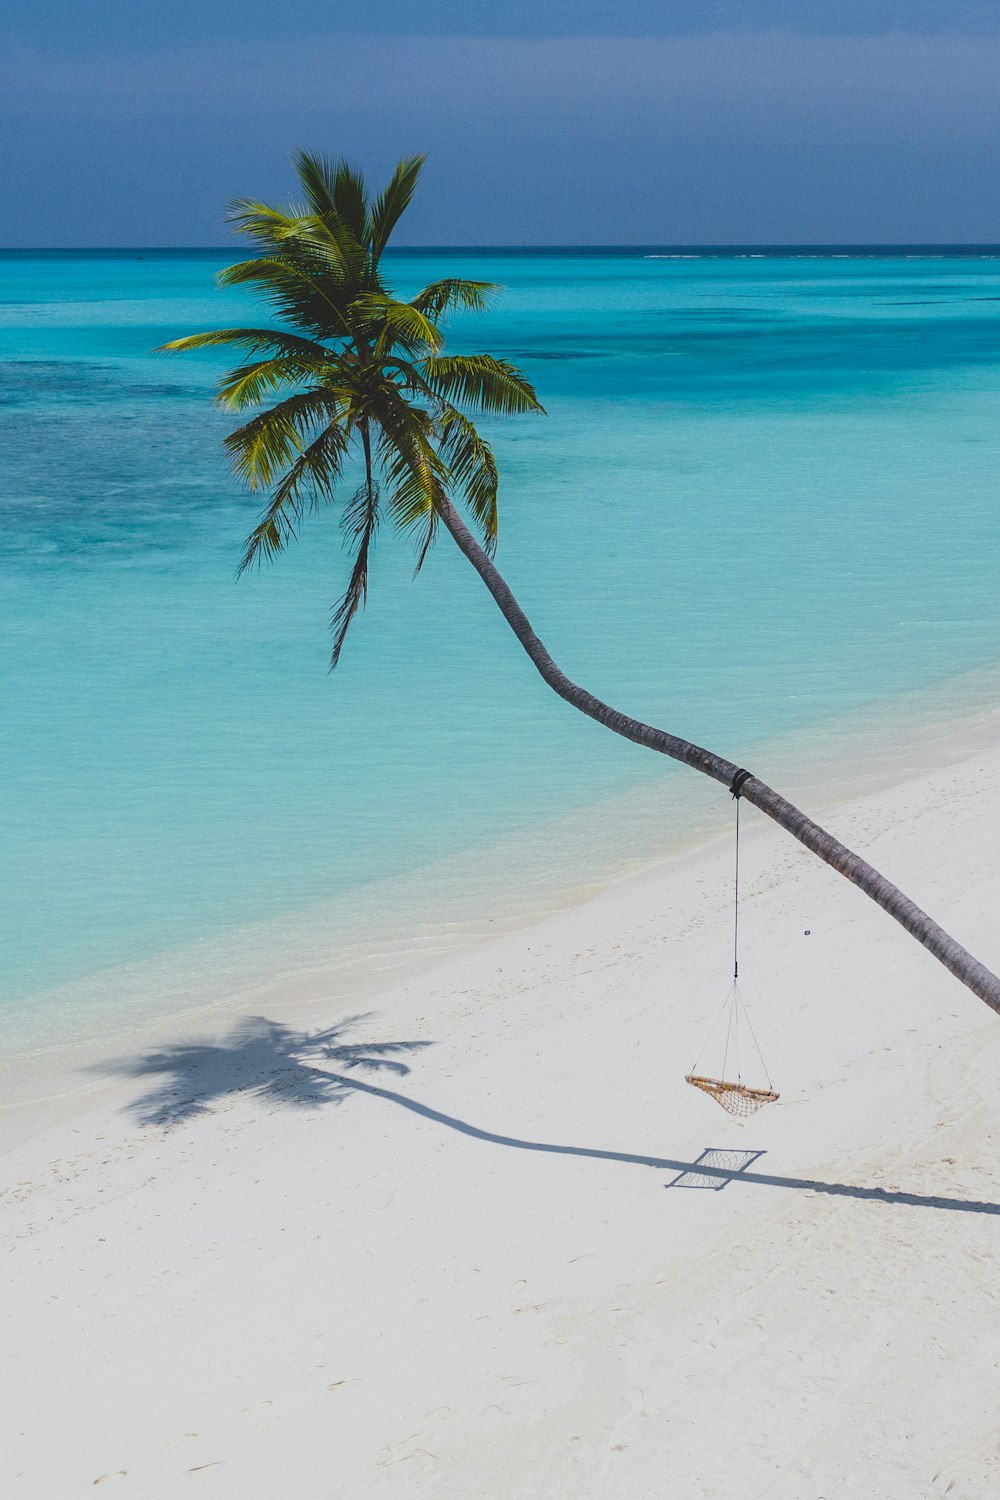 albero di cocco sulla spiaggia di sabbia bianca durante il giorno